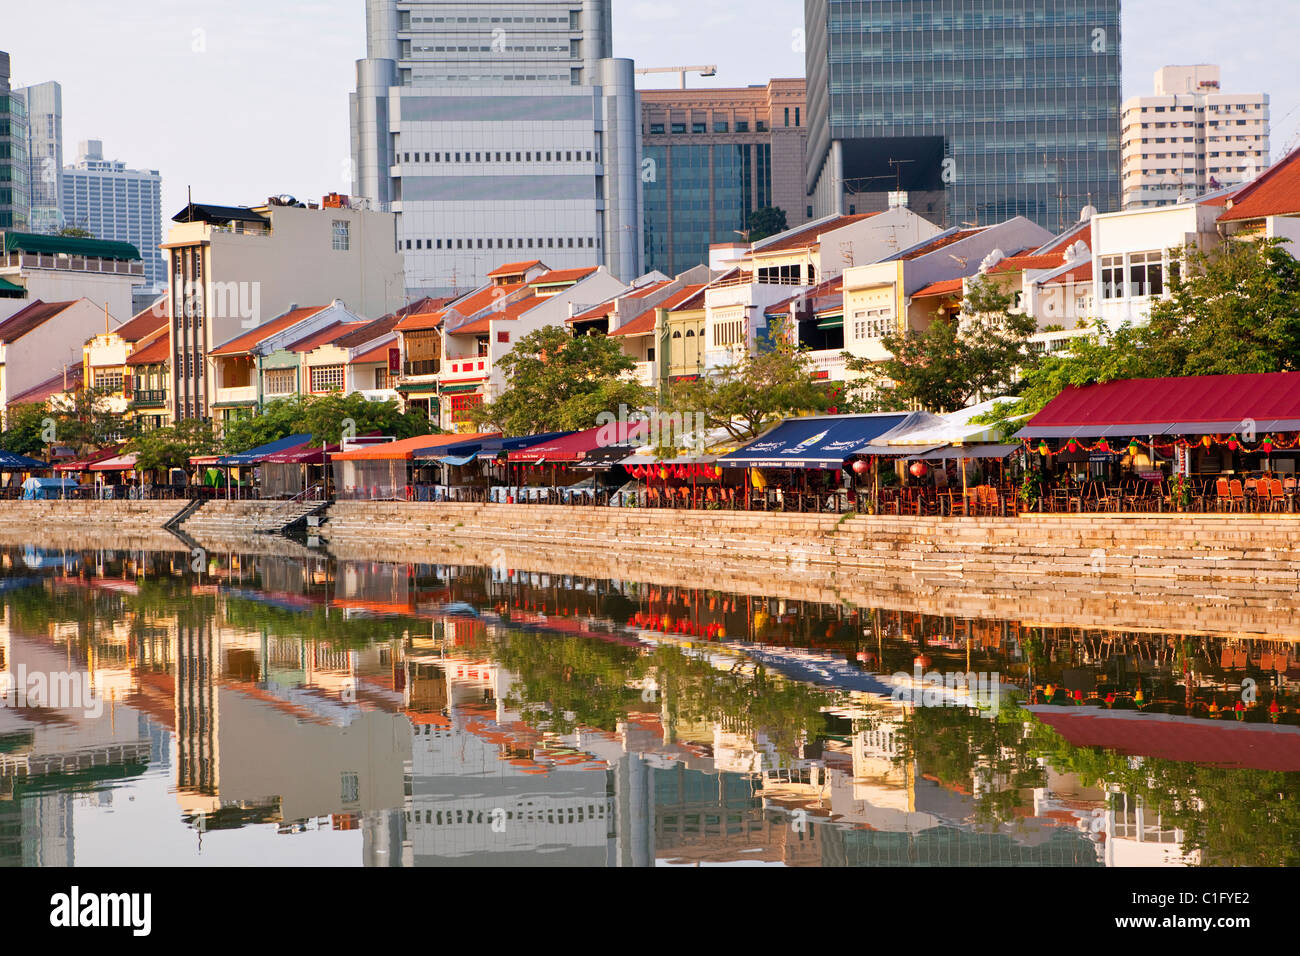 Farbenfrohe Architektur am Boat Quay - eine beliebte Bar und Restaurant Bezirk, Singapur Stockfoto